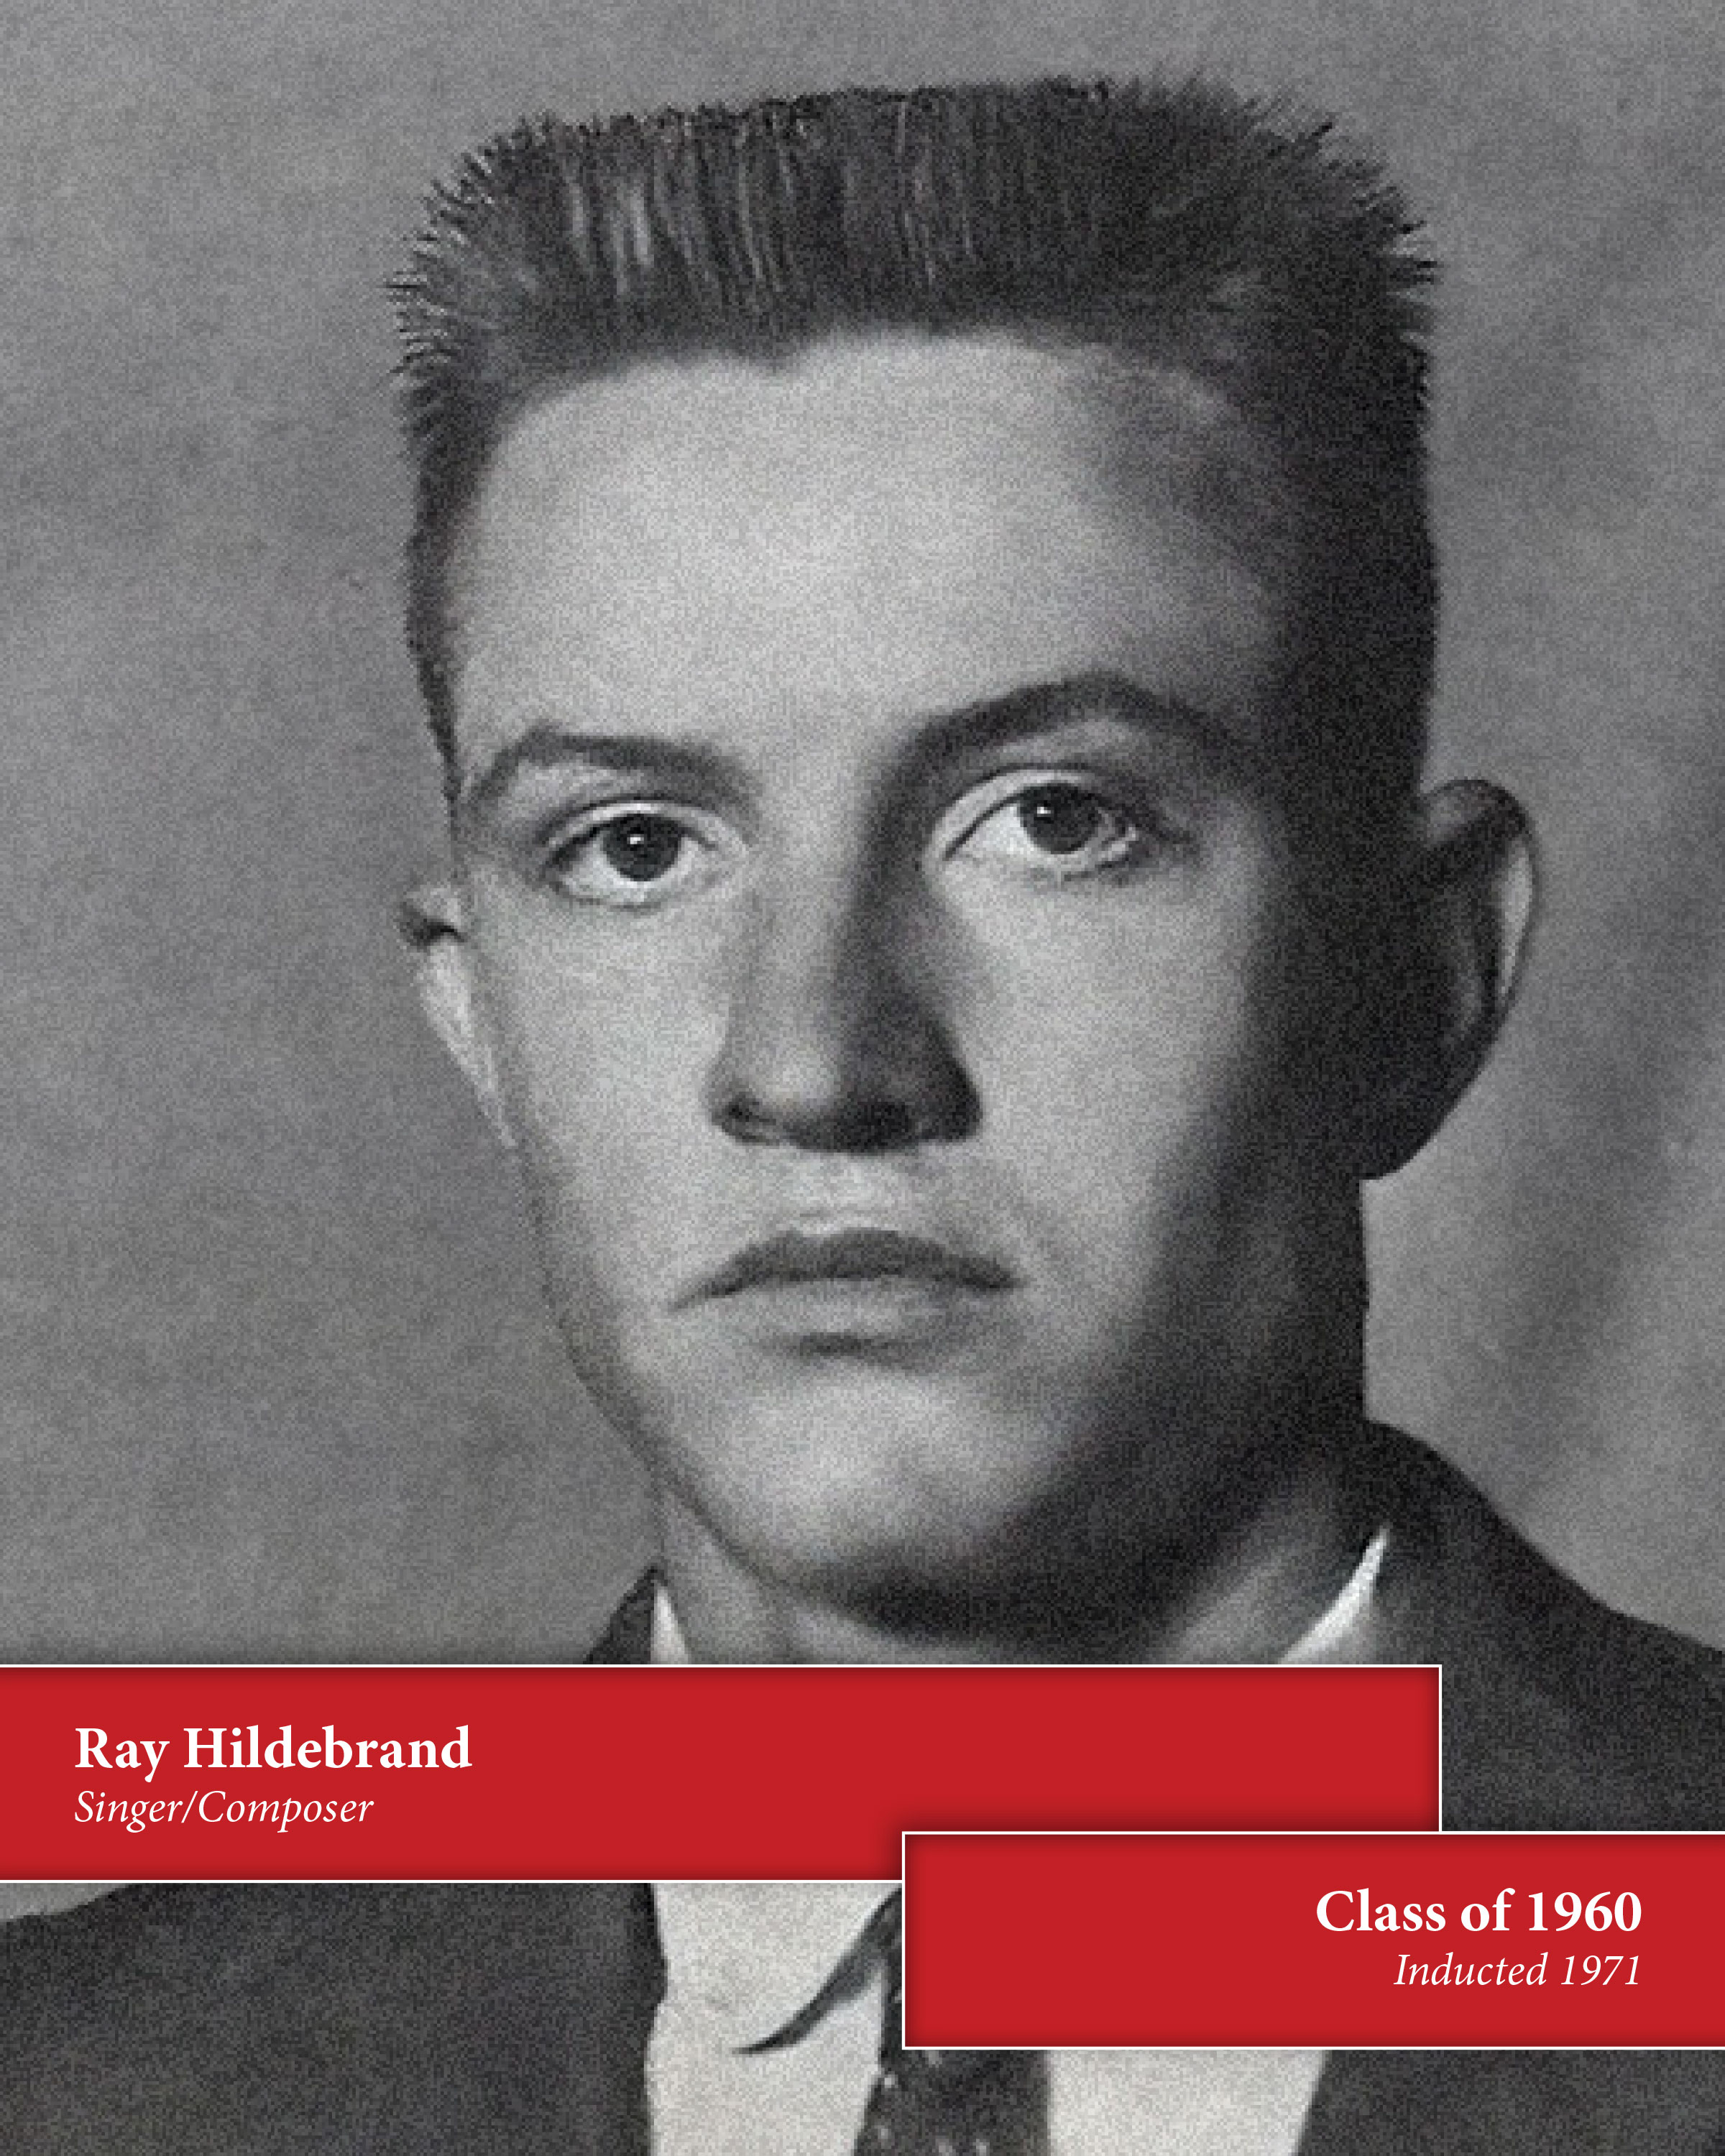 Ray Hildebrand being still alive